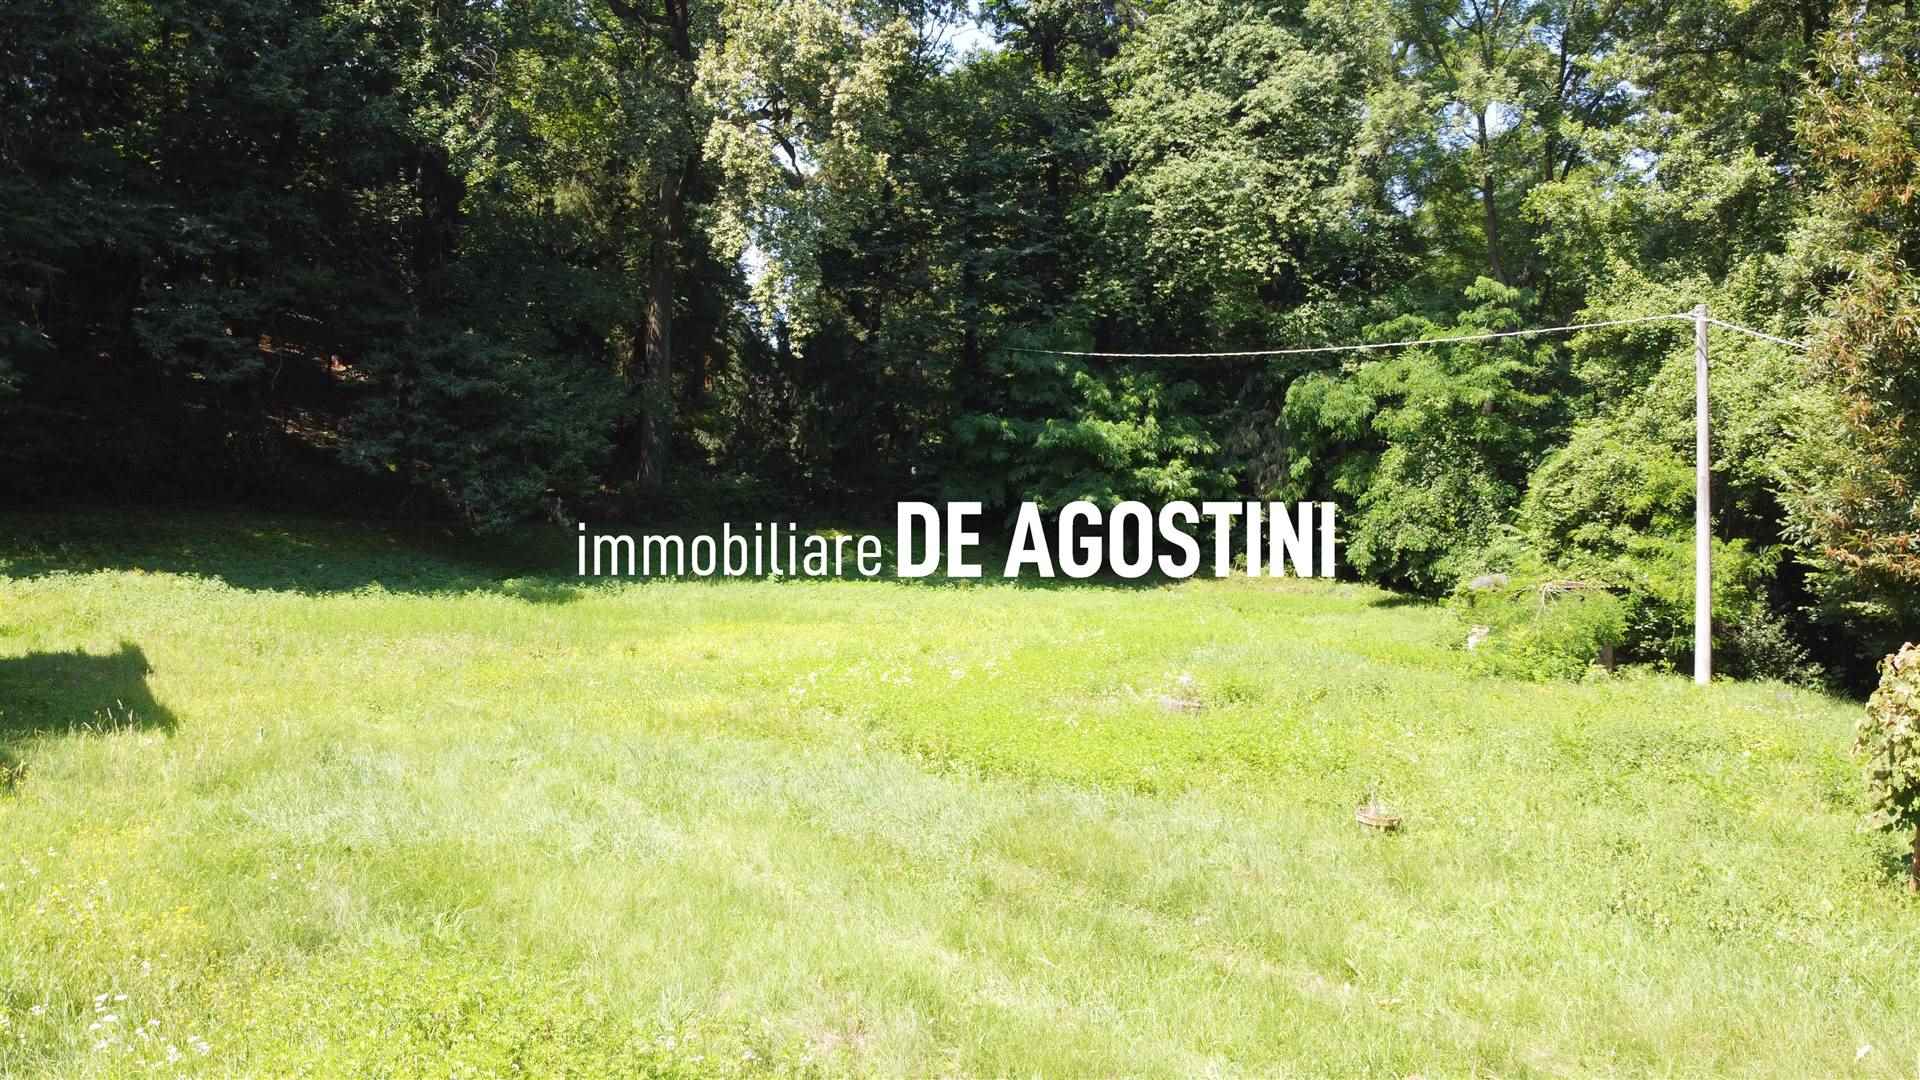 Terreno Edificabile Residenziale in vendita a Oleggio Castello, 9999 locali, prezzo € 70.000 | CambioCasa.it